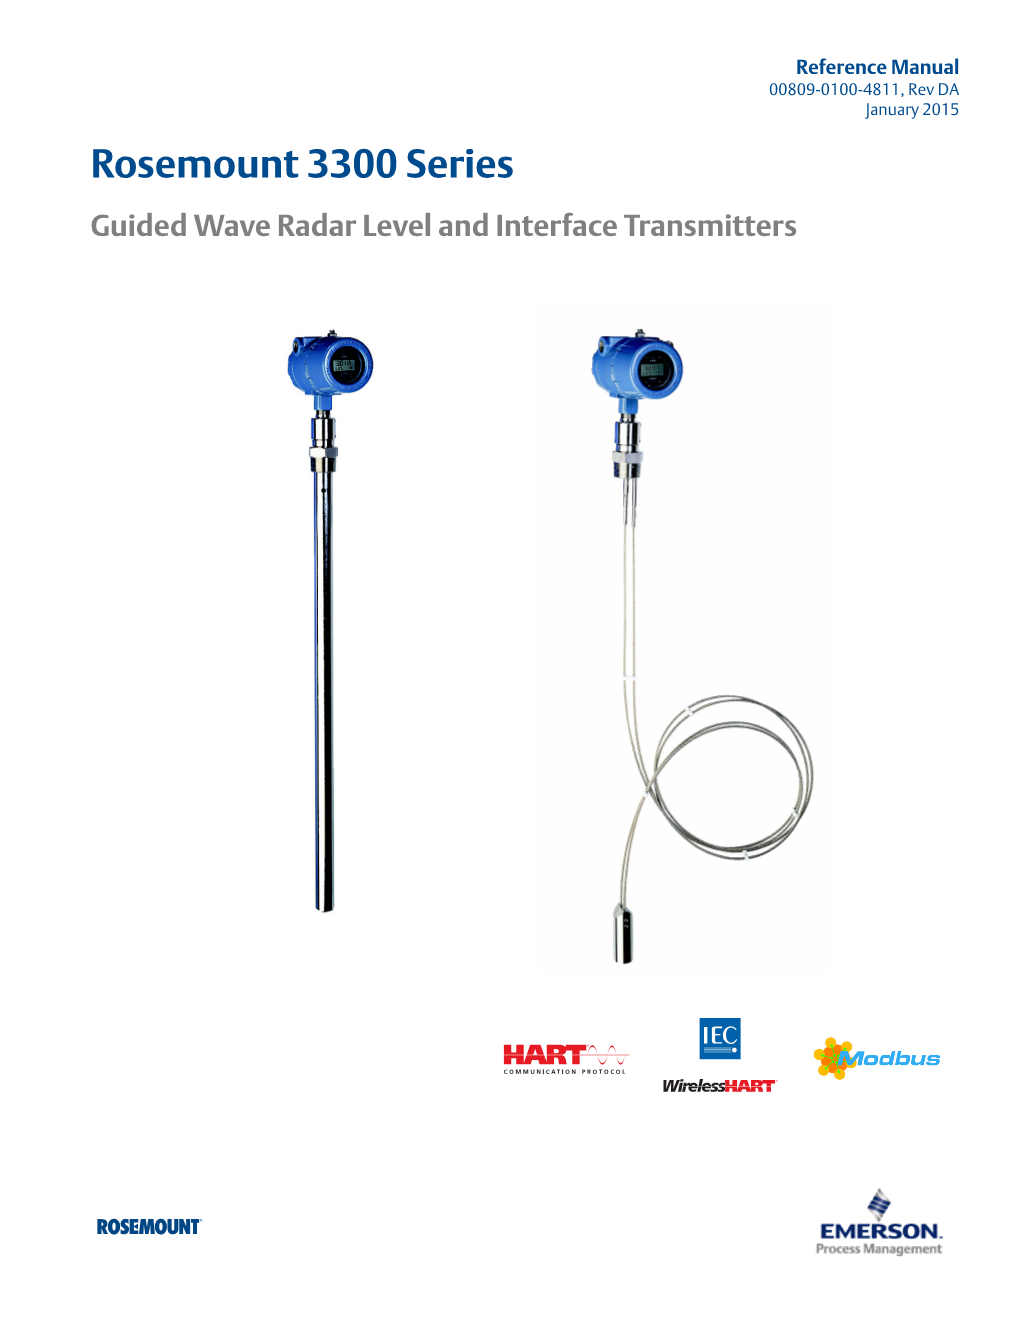 Manual: Rosemount 3300 Series Guided Wave Radar Level And